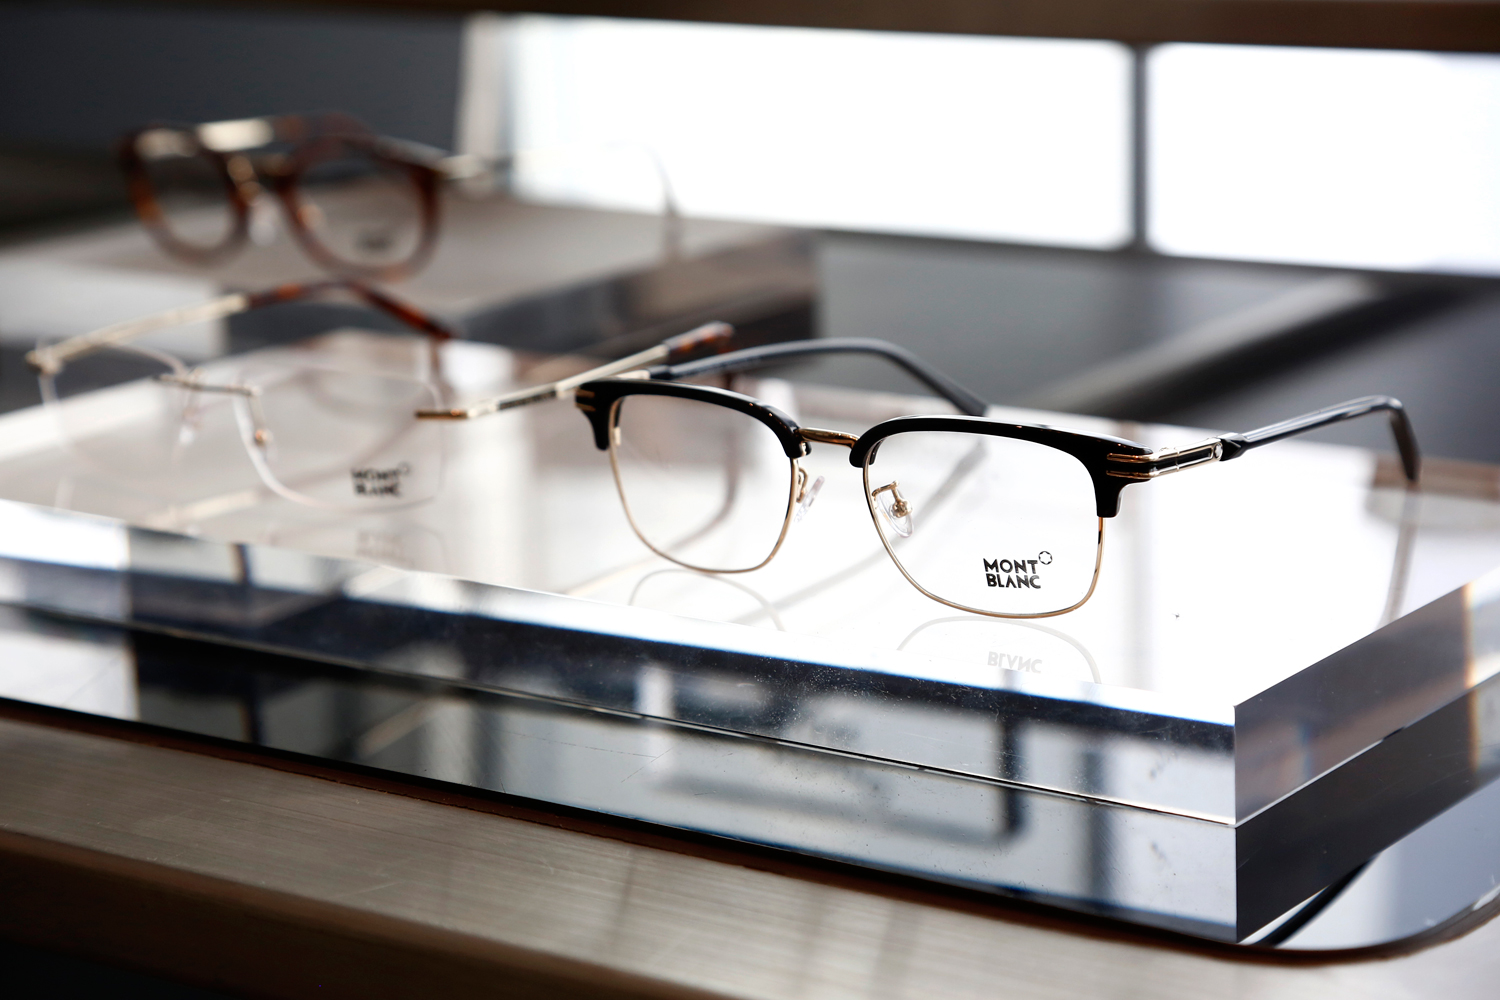 MONTBLANC EYEWEAR
110年以来，万宝龙已成为精进和创新不断的代名词。凭借其创始人的开拓精神，品牌将历史和创新、品质和卓越、工艺专长和优雅特质完美结合。受到真诚价值的启发，2017/2018秋冬季新款眼镜系列囊括了万宝龙所有理念。
